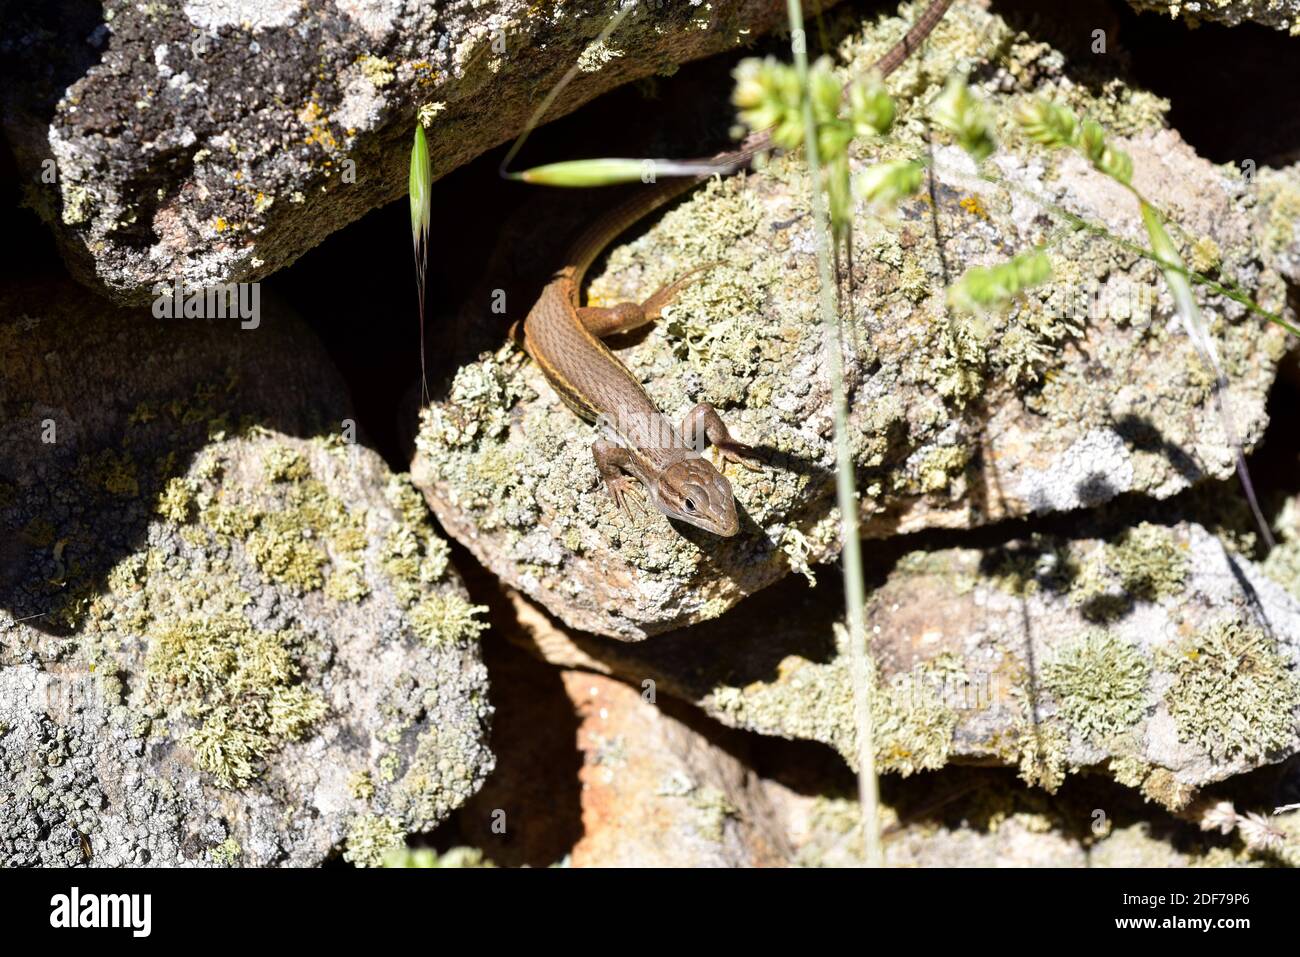 El corredor de arena argelino (Psammodromus algirus) es un lagarto nativo de la Península Ibérica y del oeste de África. Esta foto fue tomada en Arribes del Duero Foto de stock